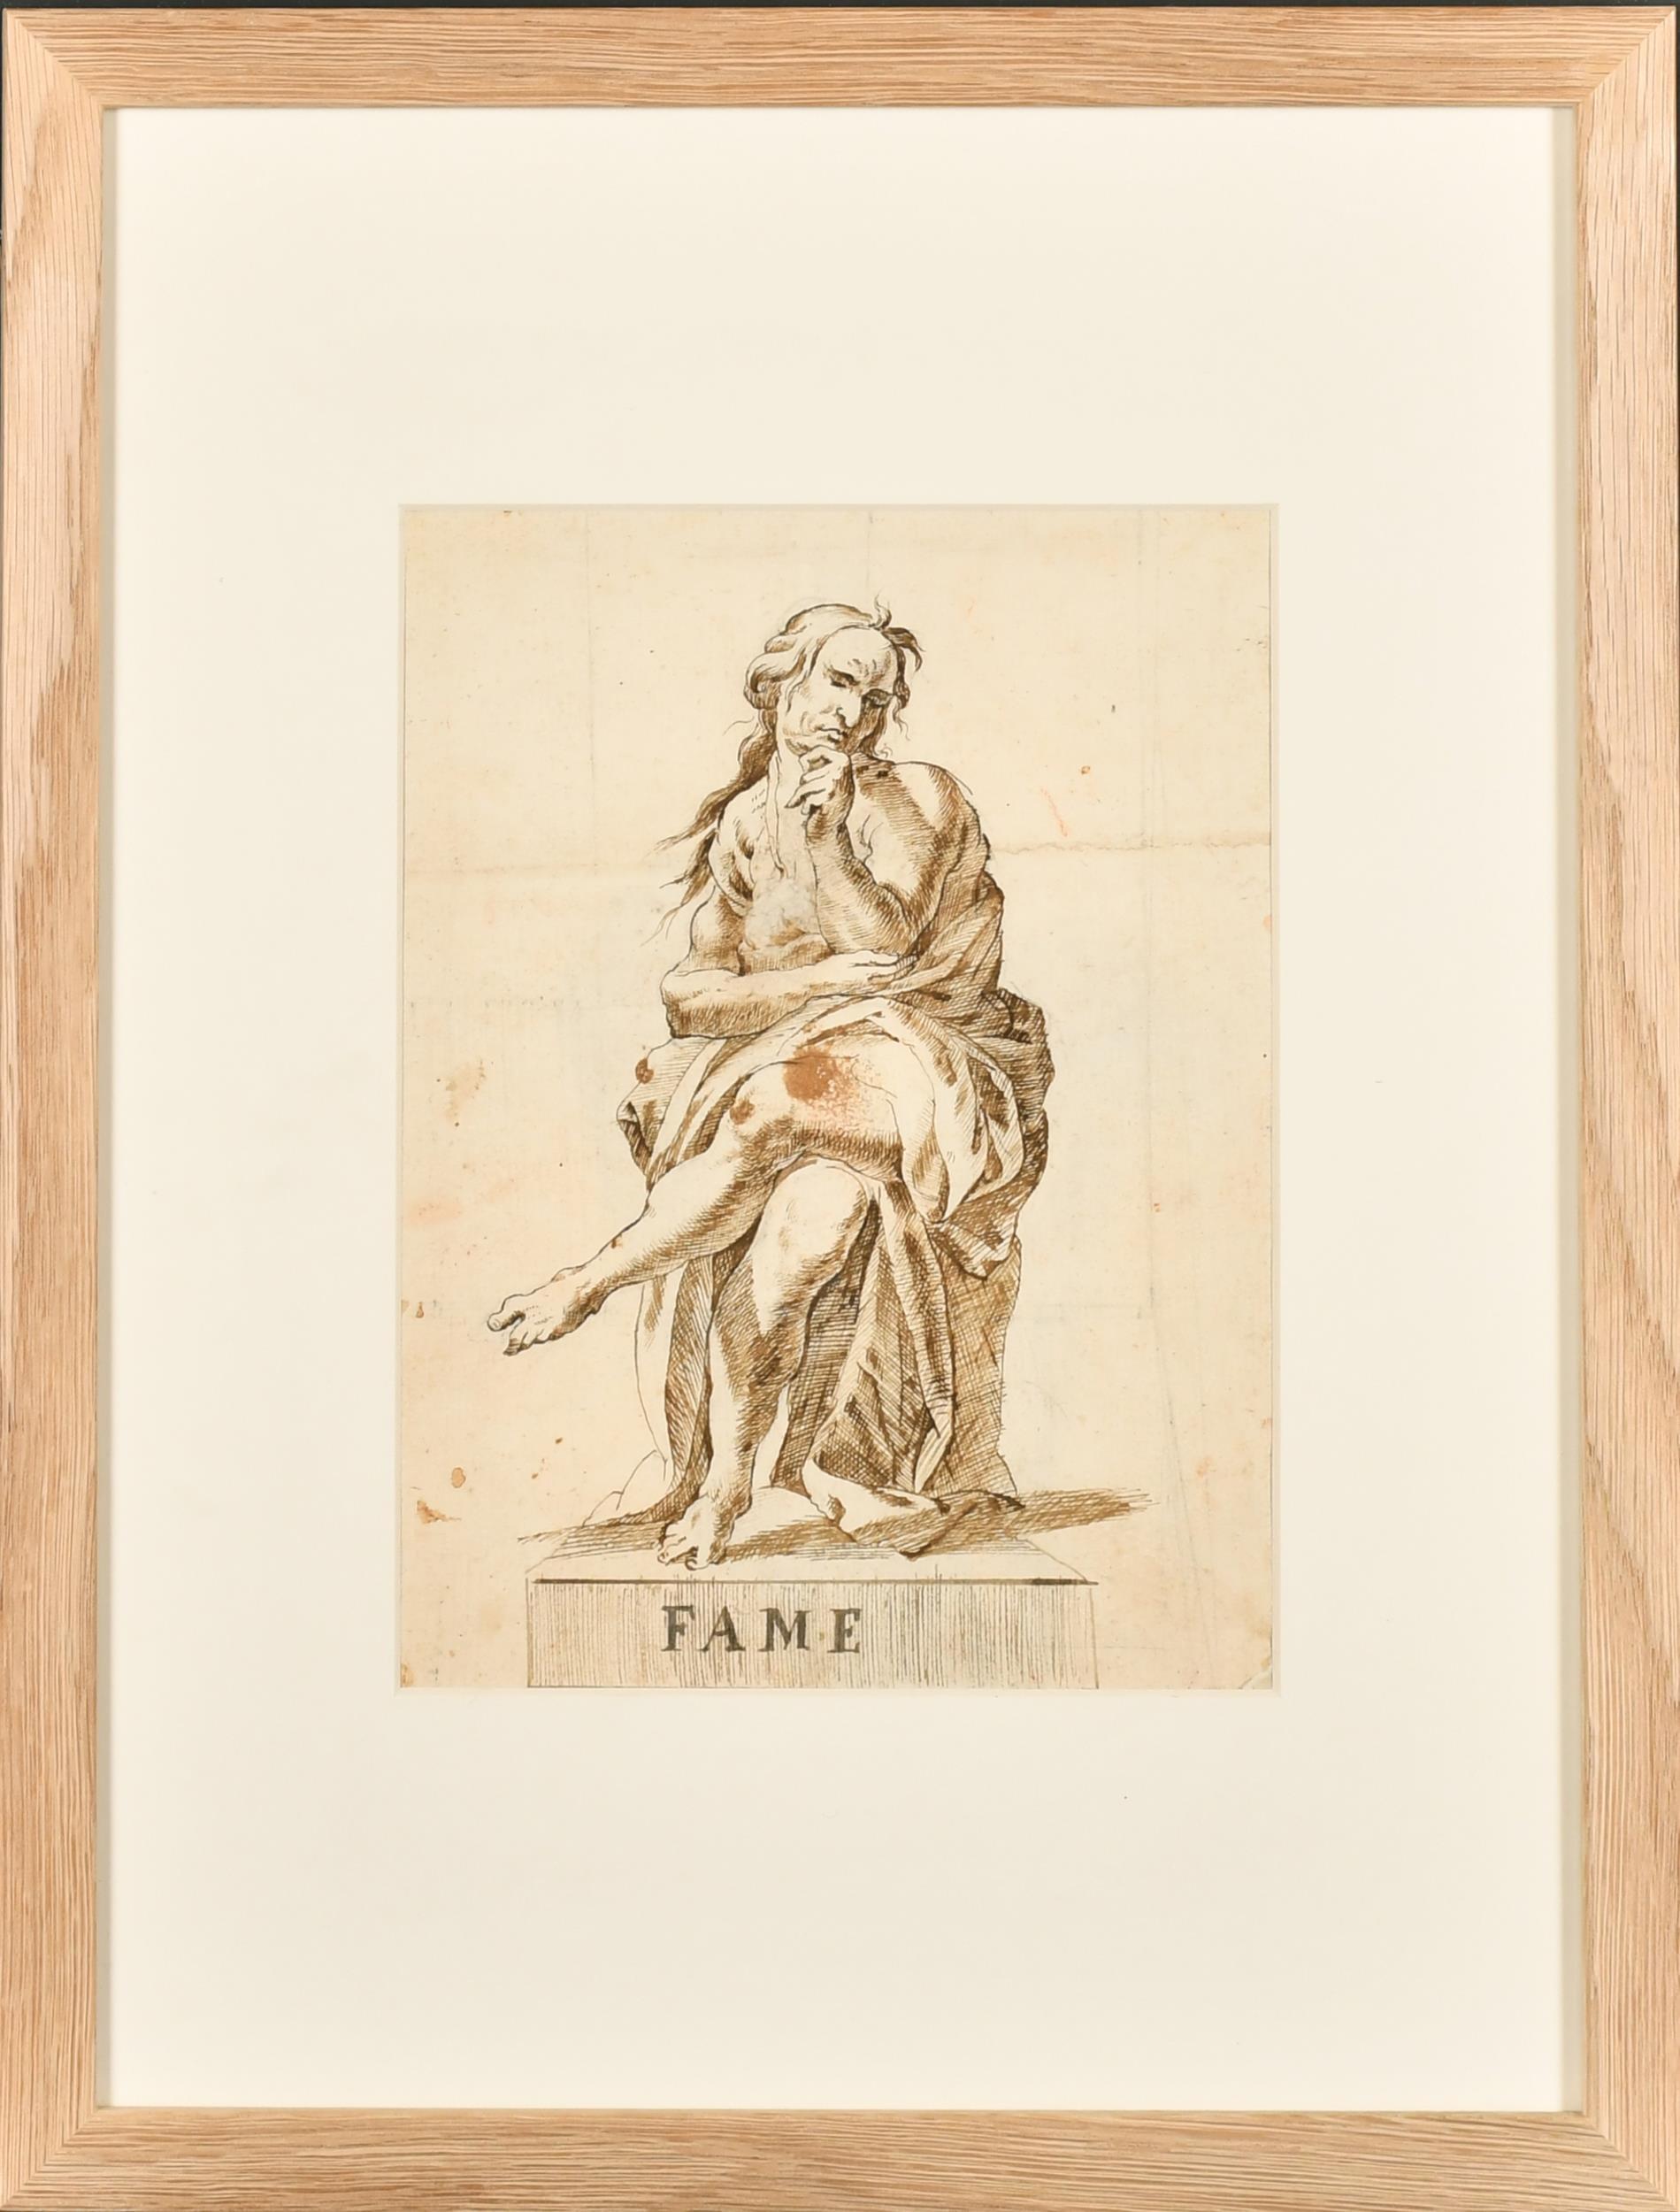 Italienische alte Meister-Tinten- und Waschzeichnung, römische Allegorische Figur, Fame, 1700er Jahre – Art von 18thC Italian Old Master